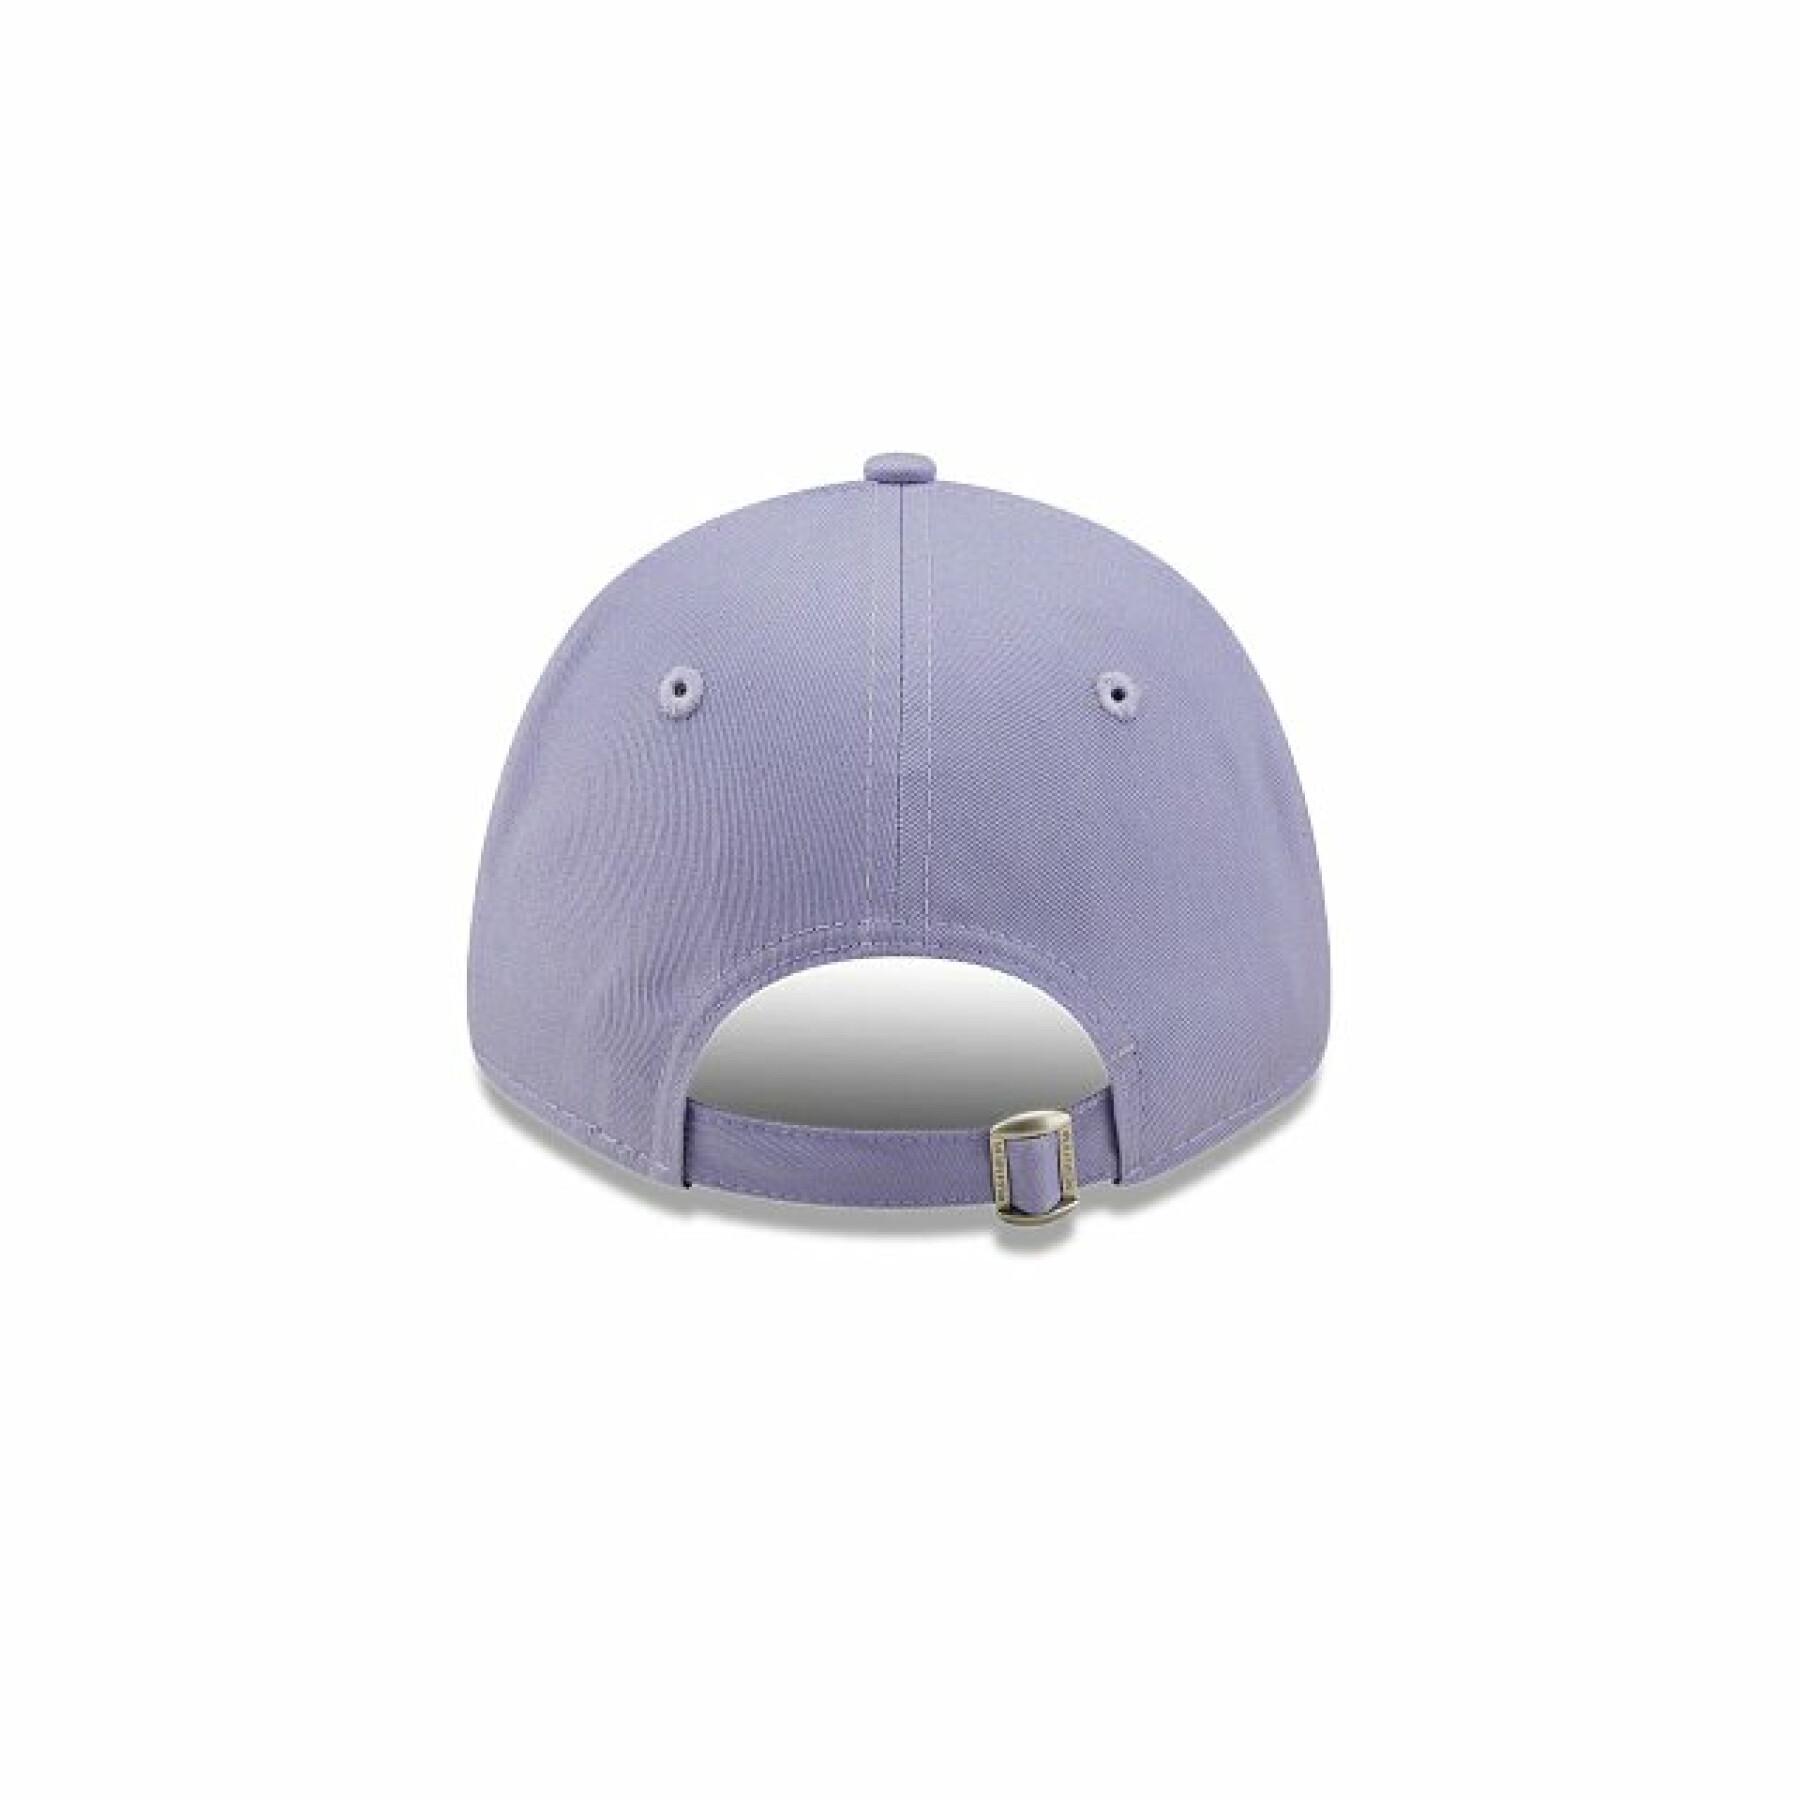 New York Yankees essential cap